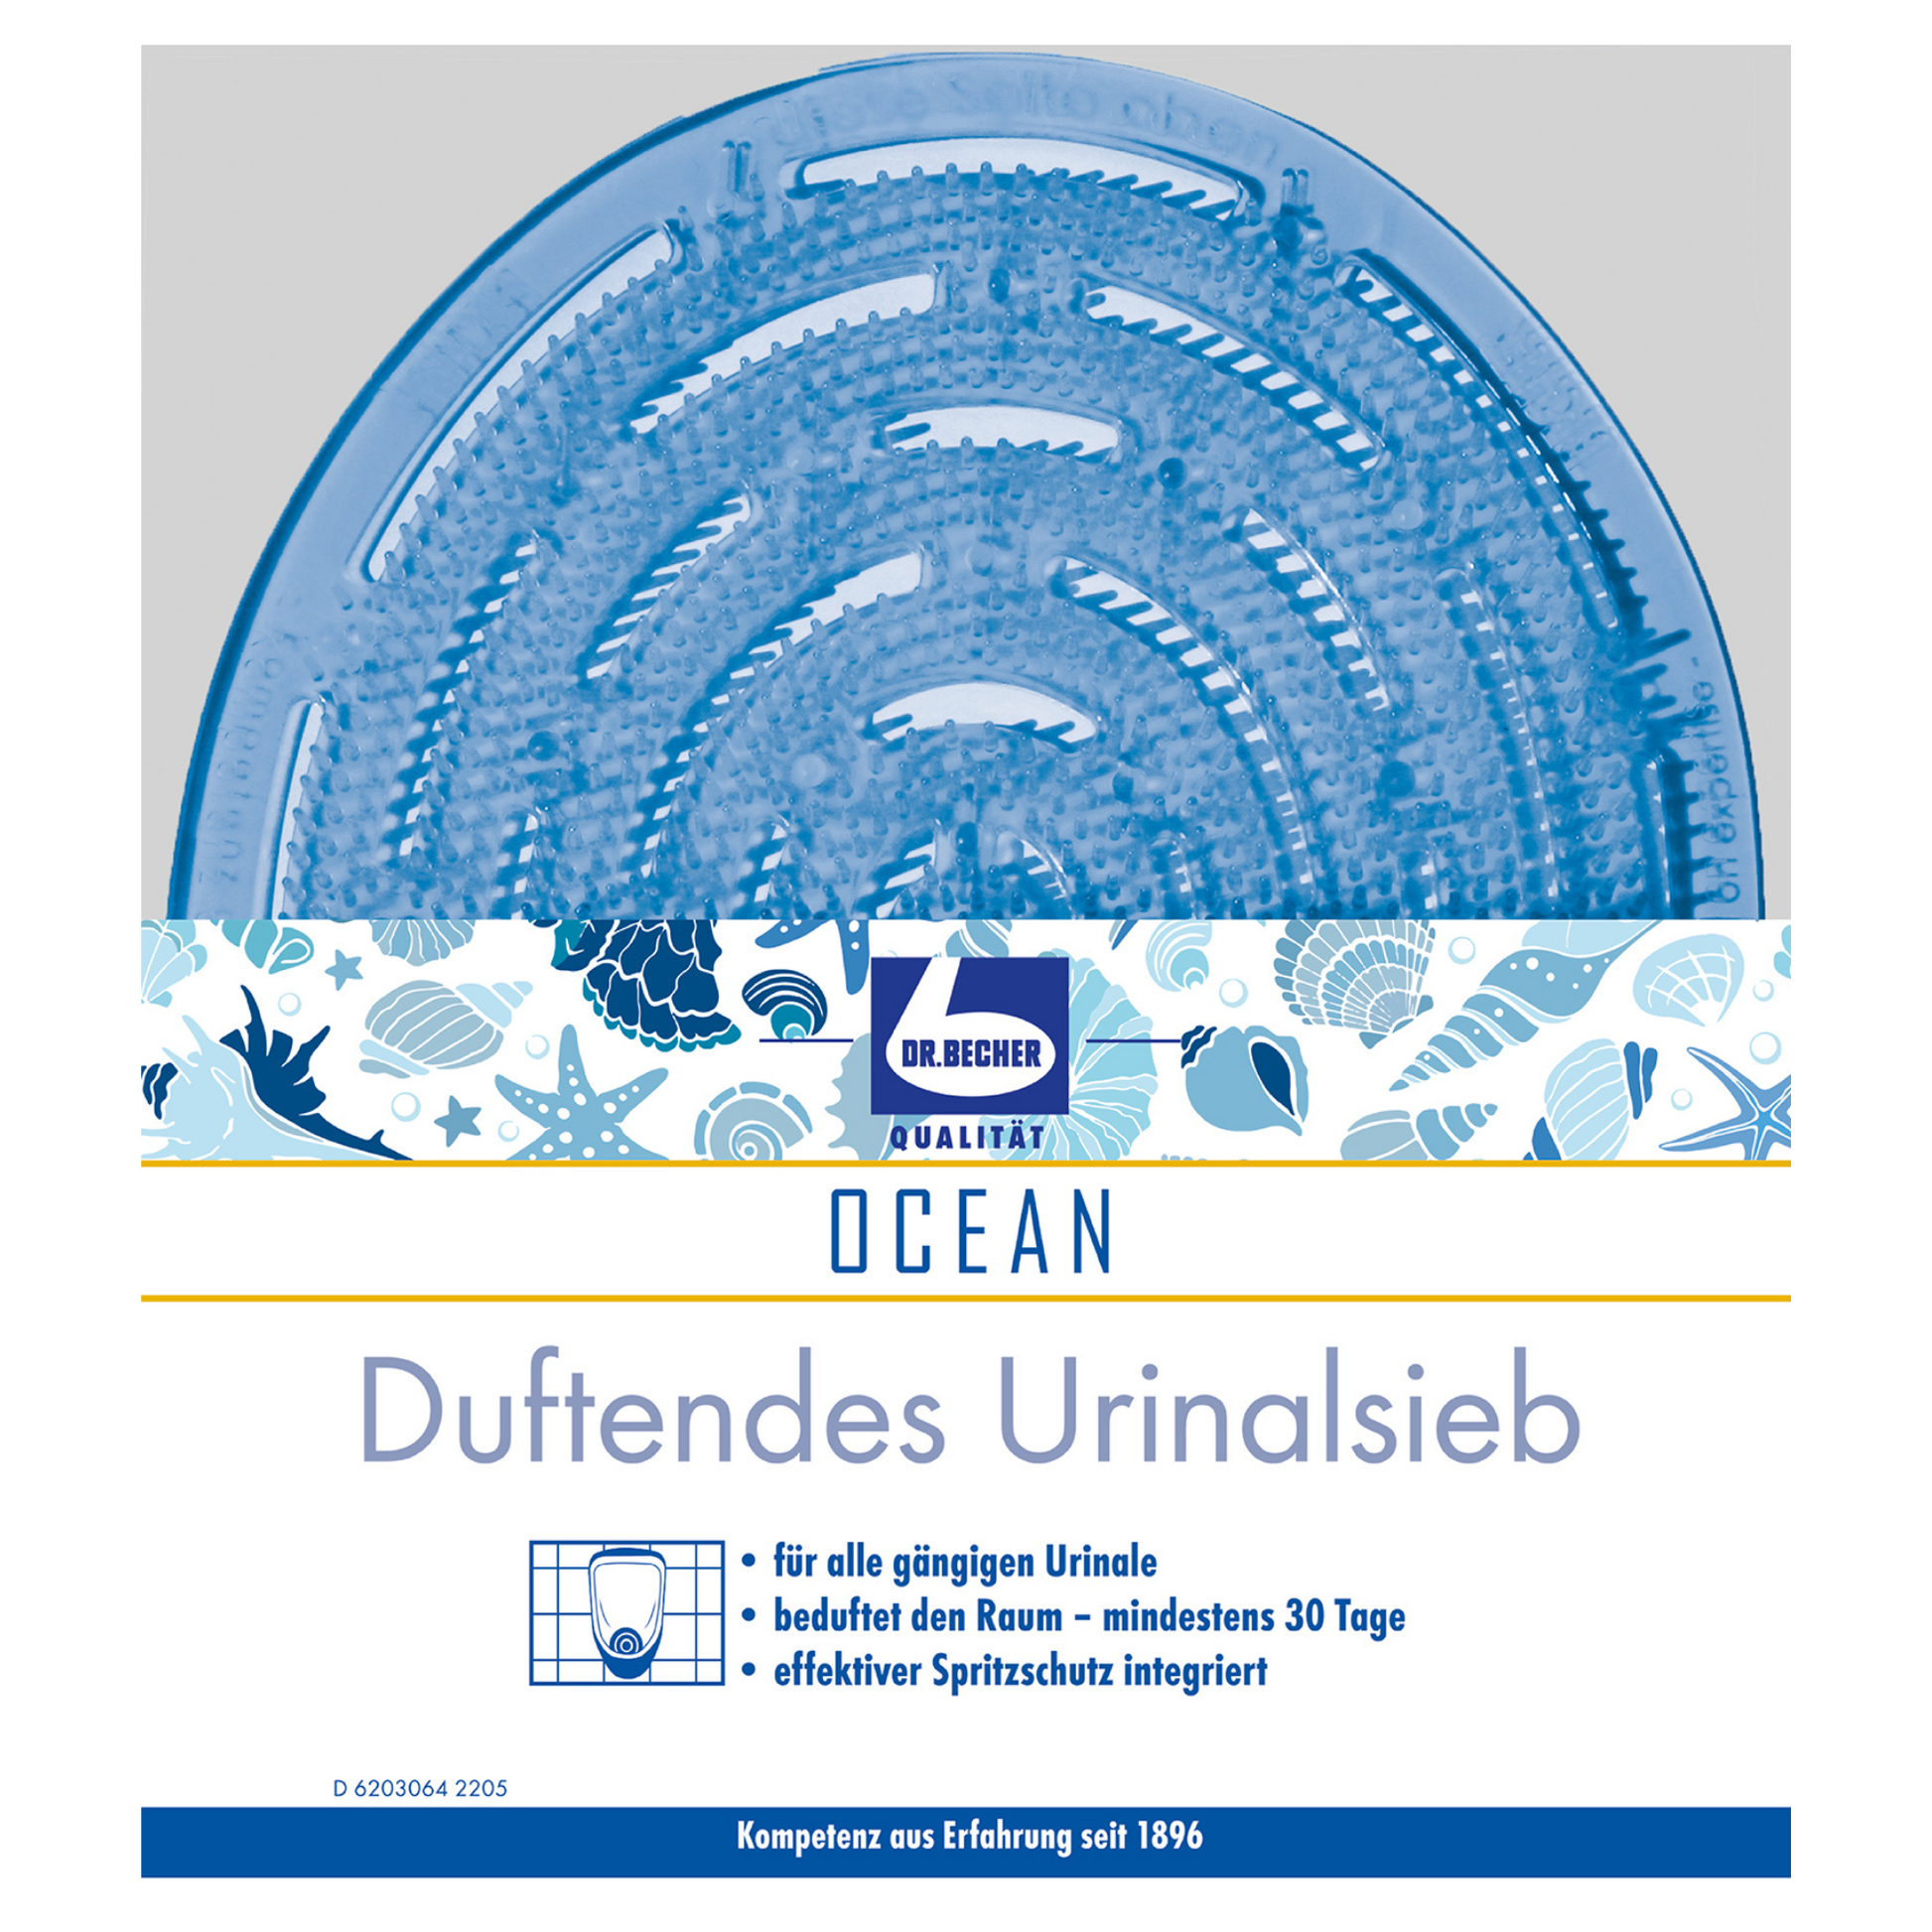 Ein rundes, blaues Dr. Becher Duftendes Urinalsieb mit Meeresmotiv, Fisch- und Wellenmuster, der Aufschrift „Ozean“ und einem deutschen Text, der die Wirksamkeit für 30 Tage anpreist. Das Logo „Dr. Becher GmbH“ ist ebenfalls auf dem Urinalsieb zu sehen.